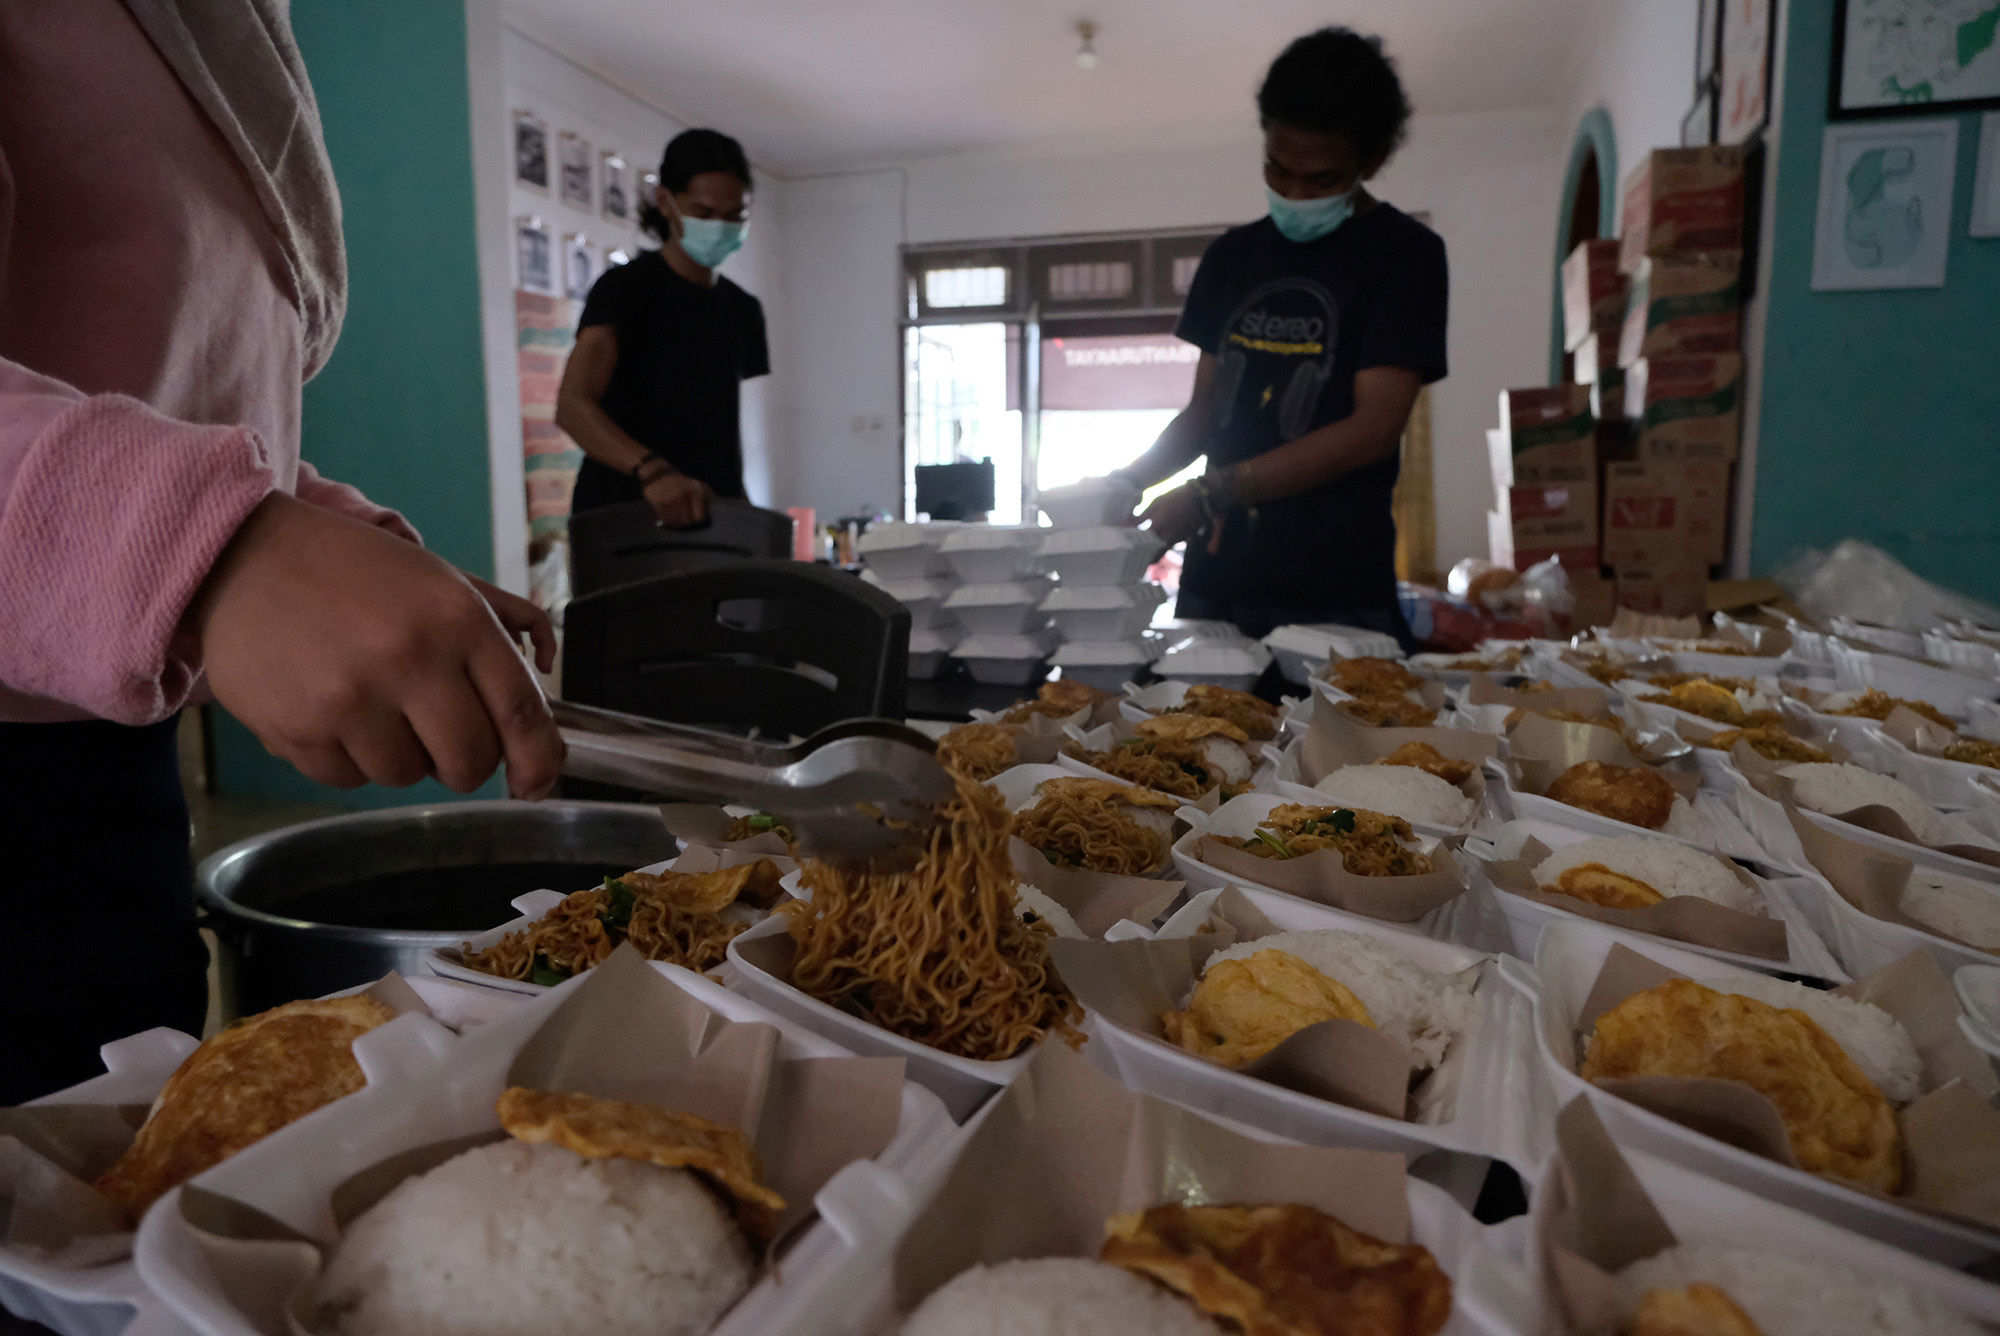 <p>Sejumlah relawan menyiapkan porsi makanan siap saji di kafe yang dirubah menjadi dapur umum bernama &#8220;Dapur Untuk Rakyat&#8221; di kawasan Pisangan, Ciputat, Tangerang Selatan, Banten, Senin (20/4/2020). Sekelompok pemuda dari berbagai latar belakang mengubah sebuah cafe yang terdampak COVID-19 menjadi dapur umum dan digunakan untuk memasak makanan siap saji yang akan dibagikan kepada warga yang membutuhkan. Bahan makanan didapat dari sumbangan para donatur yang sudah dimulai sejak 8 April lalu dan akan terus berlangsung hingga pandemi berakhir sebagai bentuk kepedulian terhadap dampak COVID-19. Foto: Ismail Pohan/TrenAsia</p>
